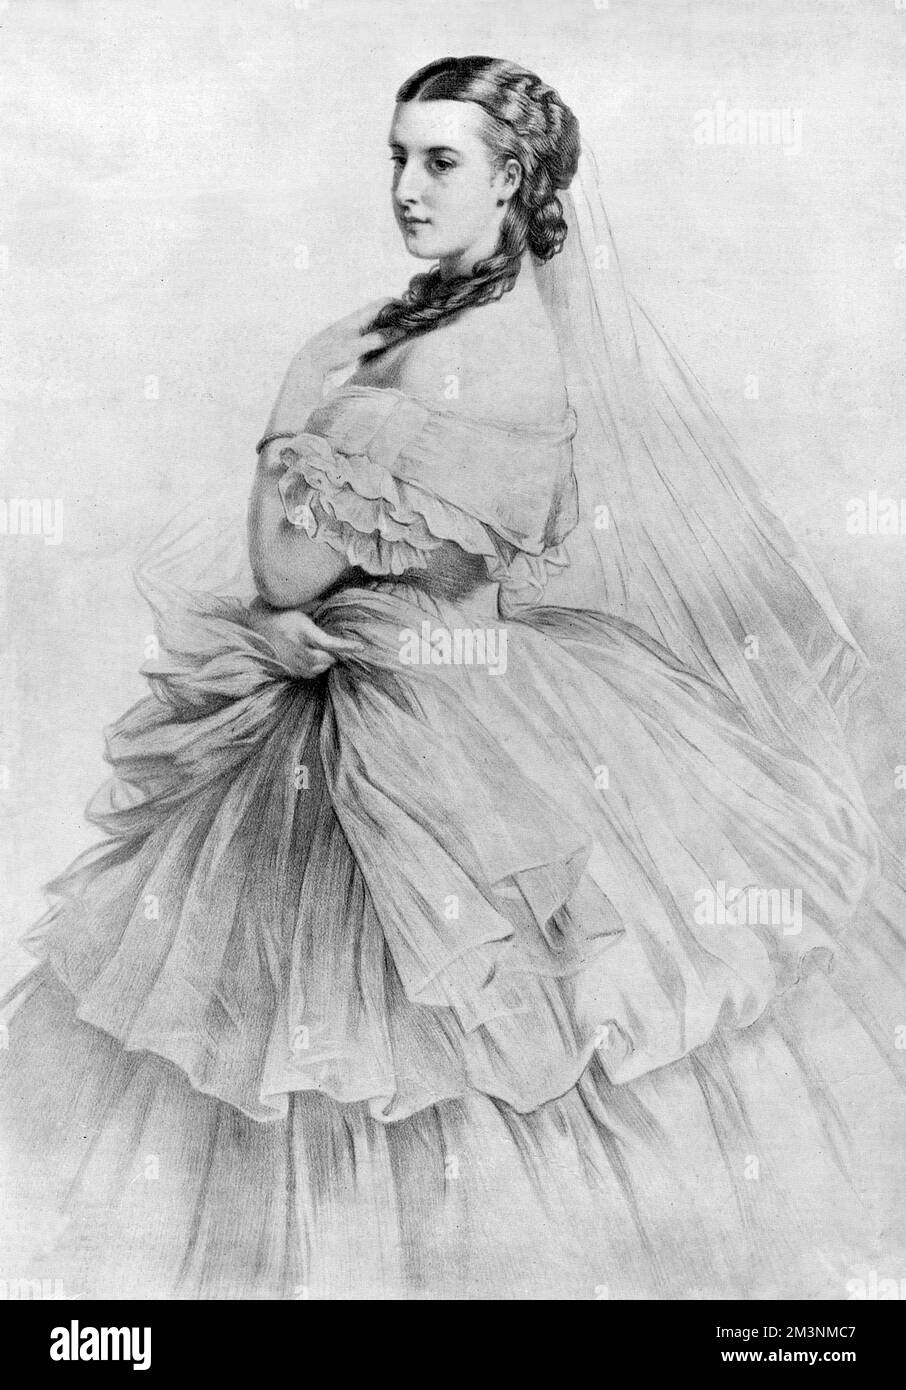 Romantische Bleistiftskizze mit Königin Alexandra (1844 - 1925) zur Zeit ihrer Hochzeit mit Albert Edward, Prinz von Wales 1863. Datum: 1863 Stockfoto